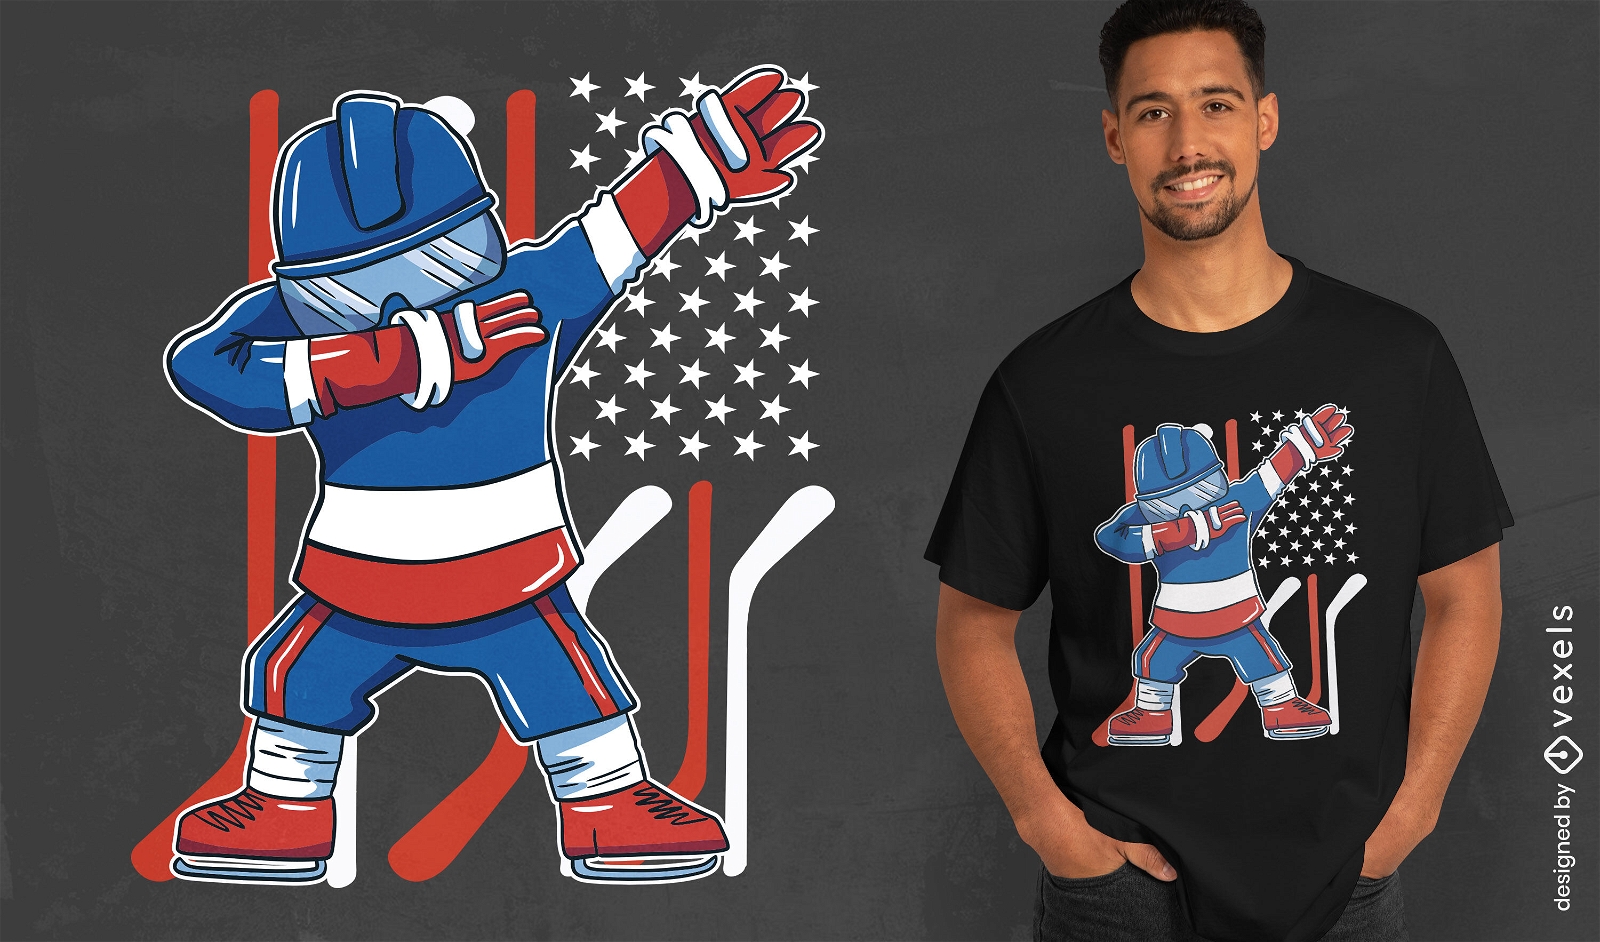 Dise?o de camiseta de jugador de hockey americano.